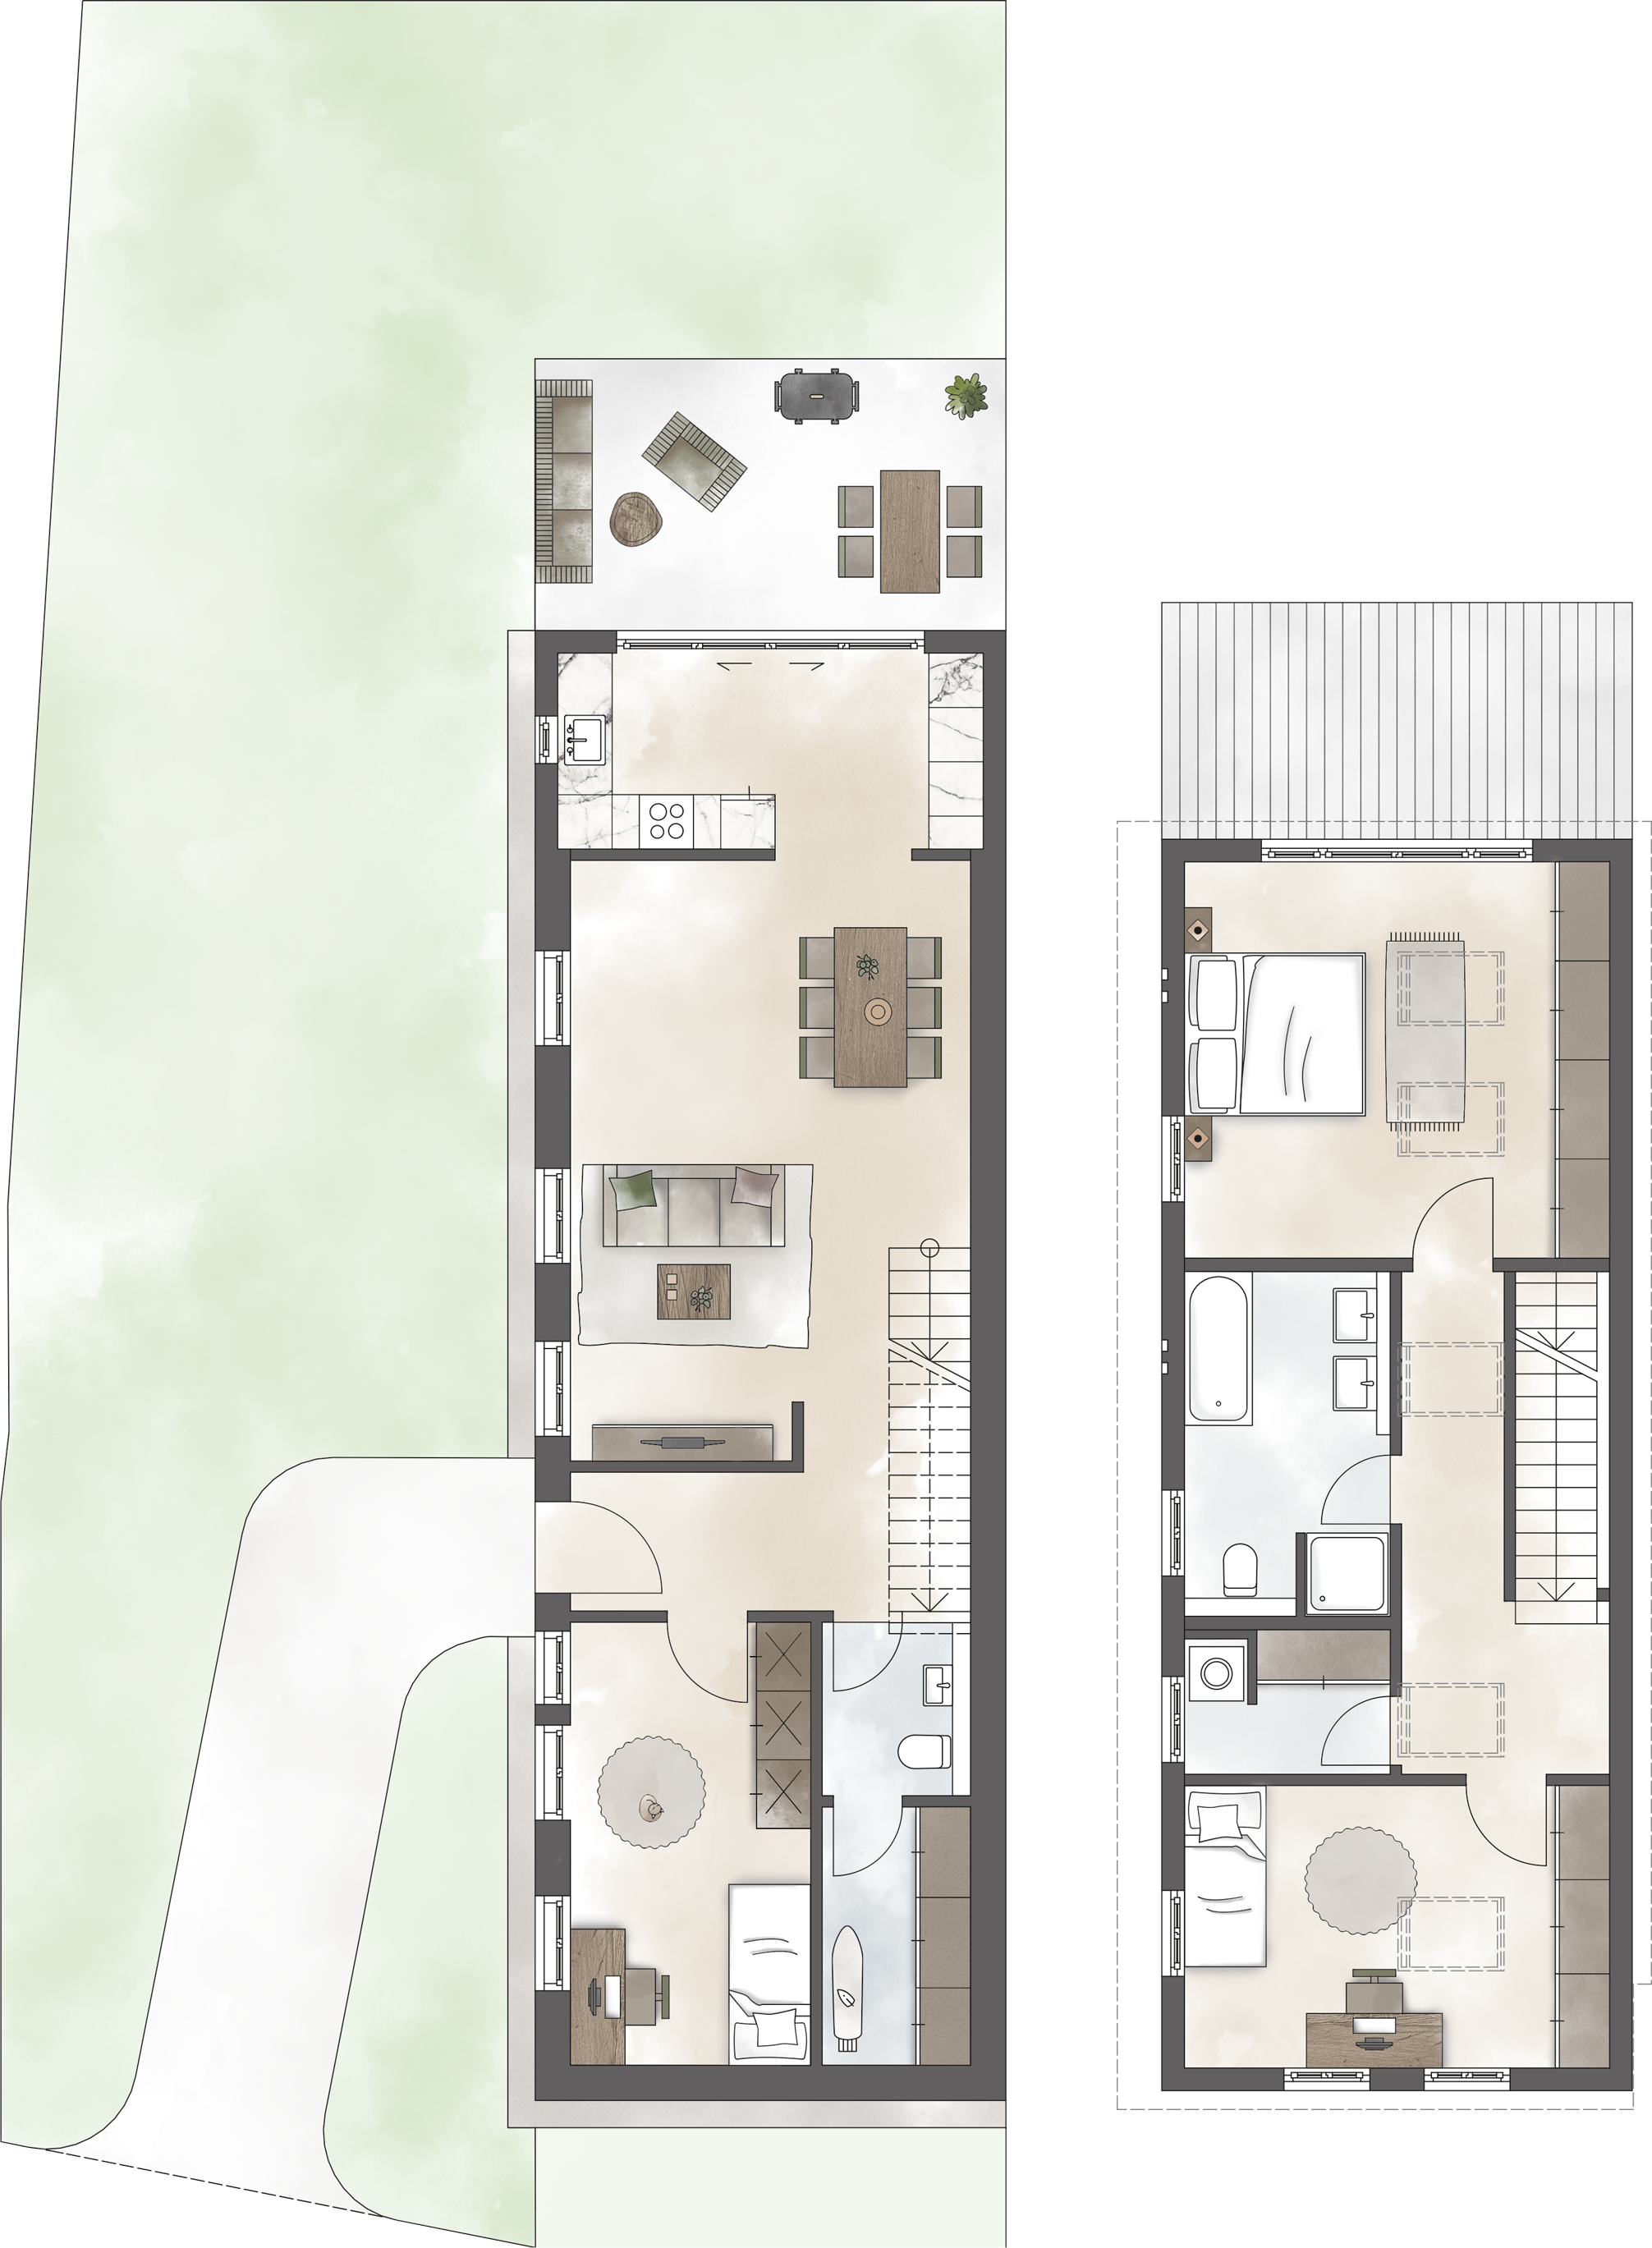 TIAMO Potsdam – alle Wohnungen mit Balkon, Terrasse oder Gartenanteil